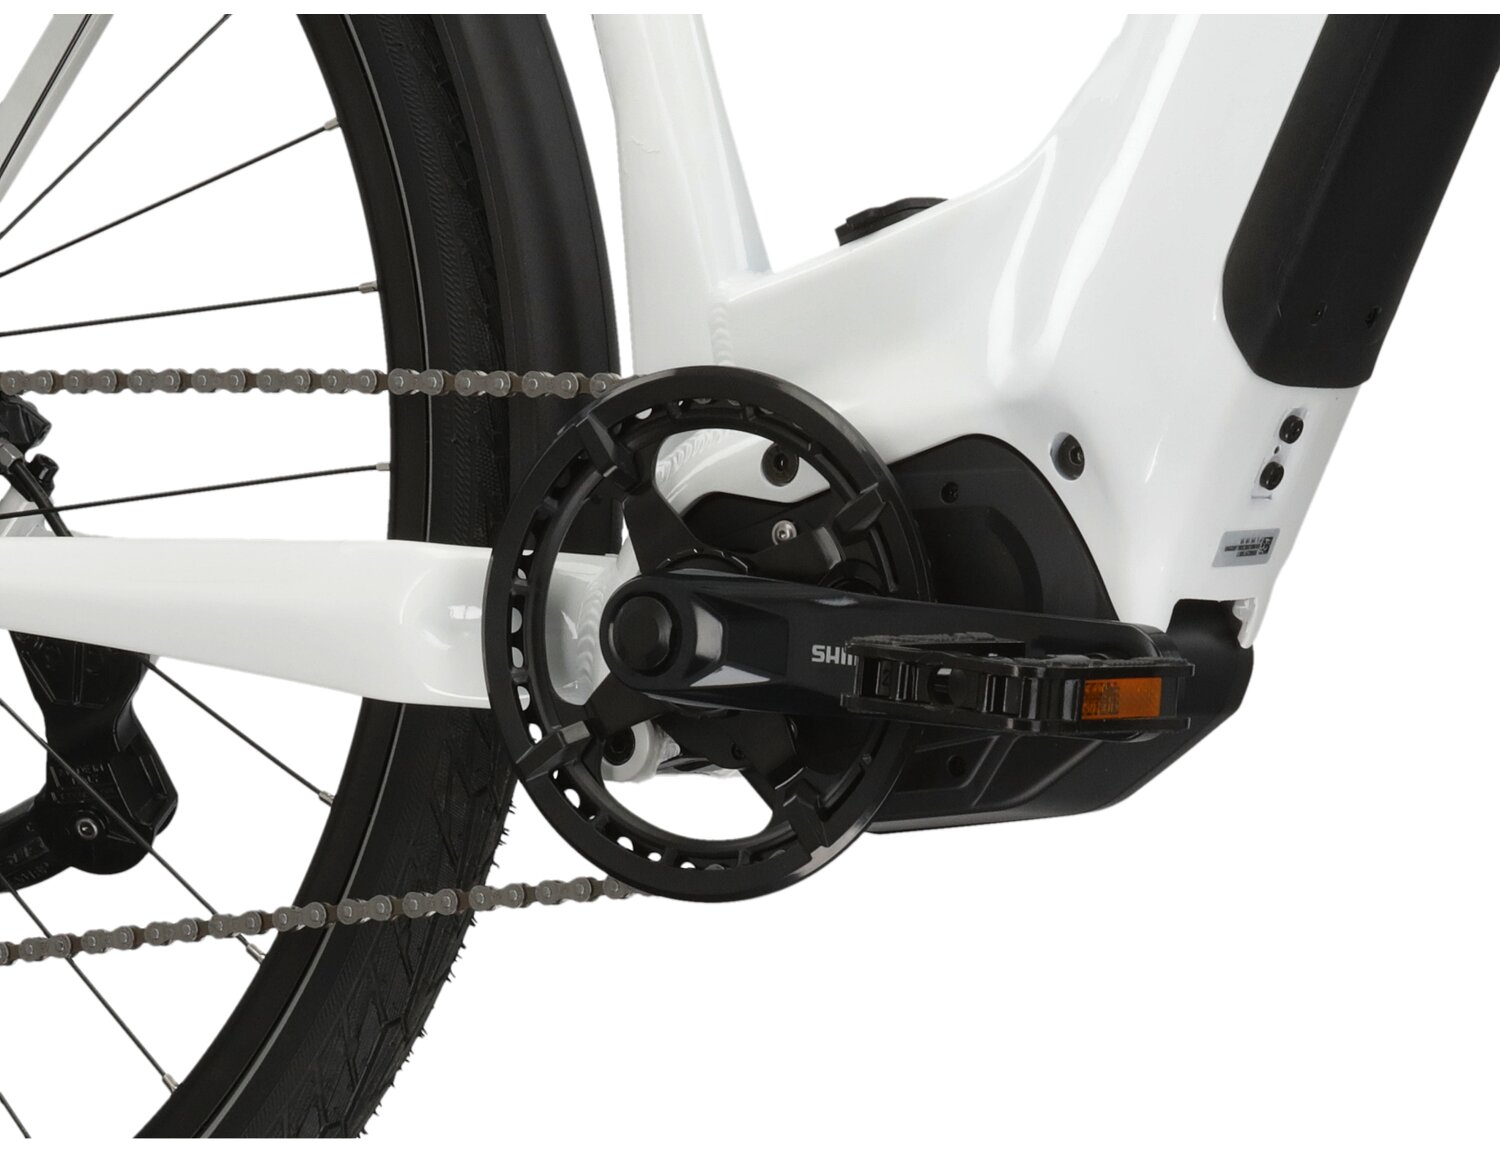  Silnik Shimano E5000 oraz bateria Simplo 17,5AH/630WH w rowerze elektrycznym trekkingowym KROSS Trans Hybrid LS 5.0 